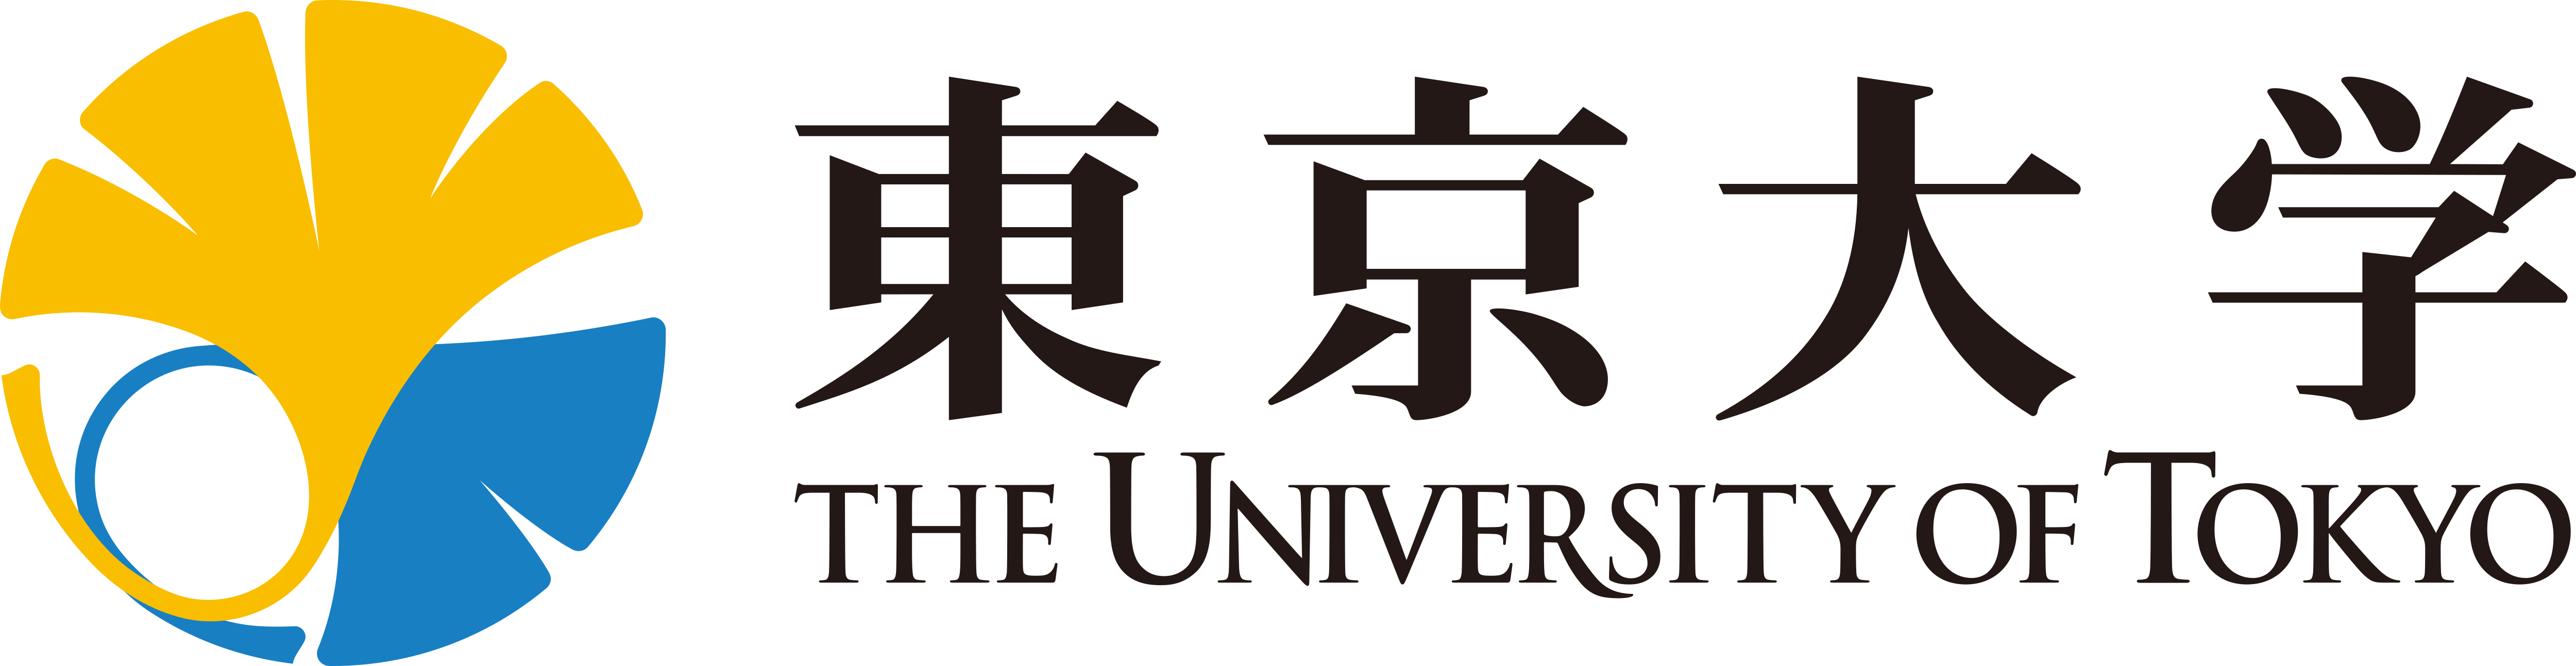 جامعة طوكيو – تحميل الشعارات